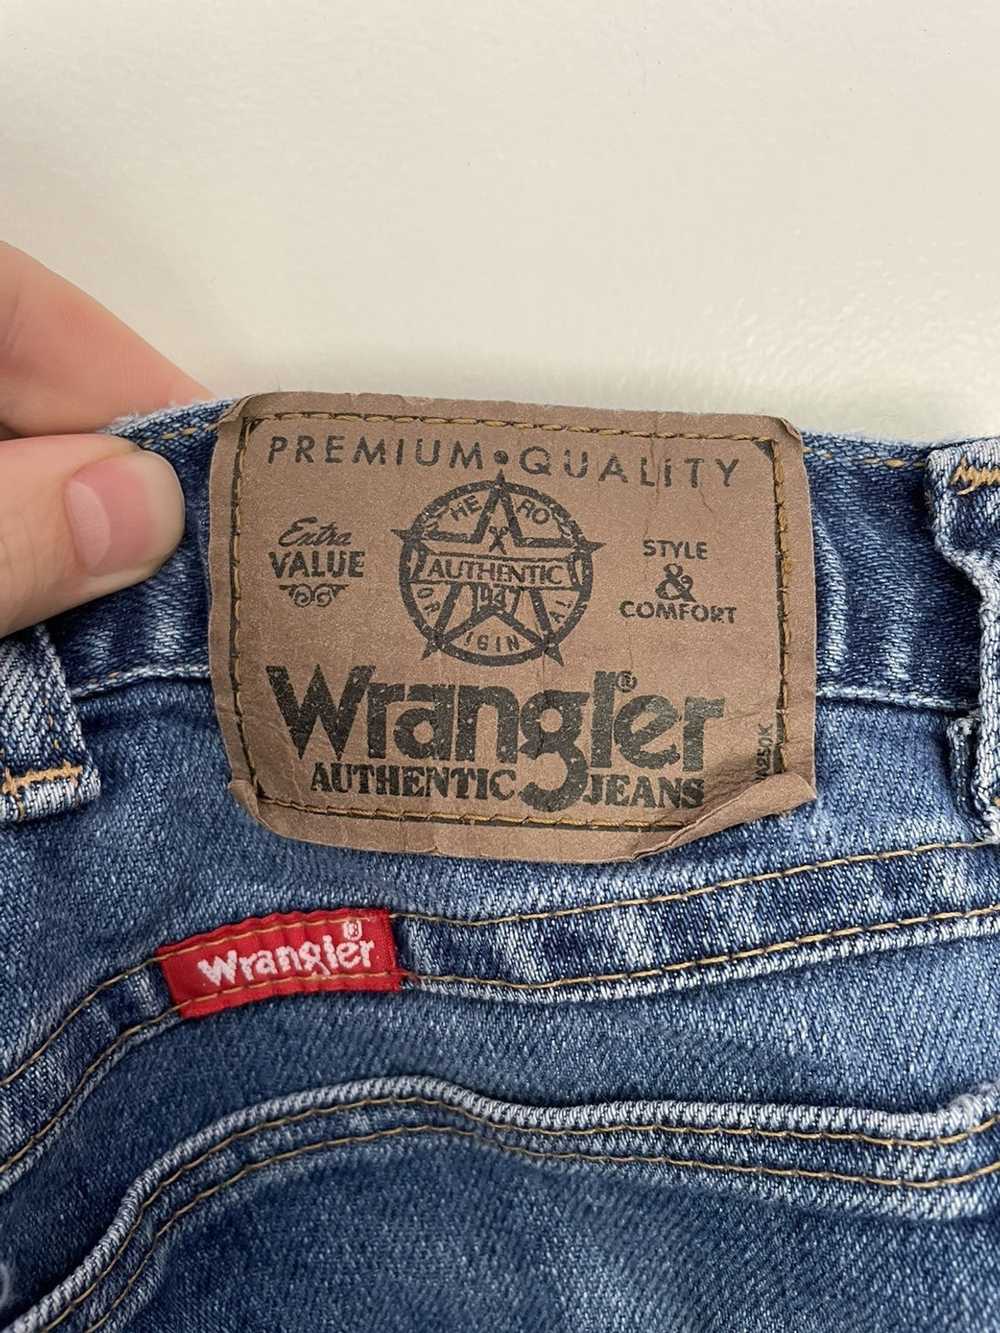 Wrangler Wrangler Jeans - image 4